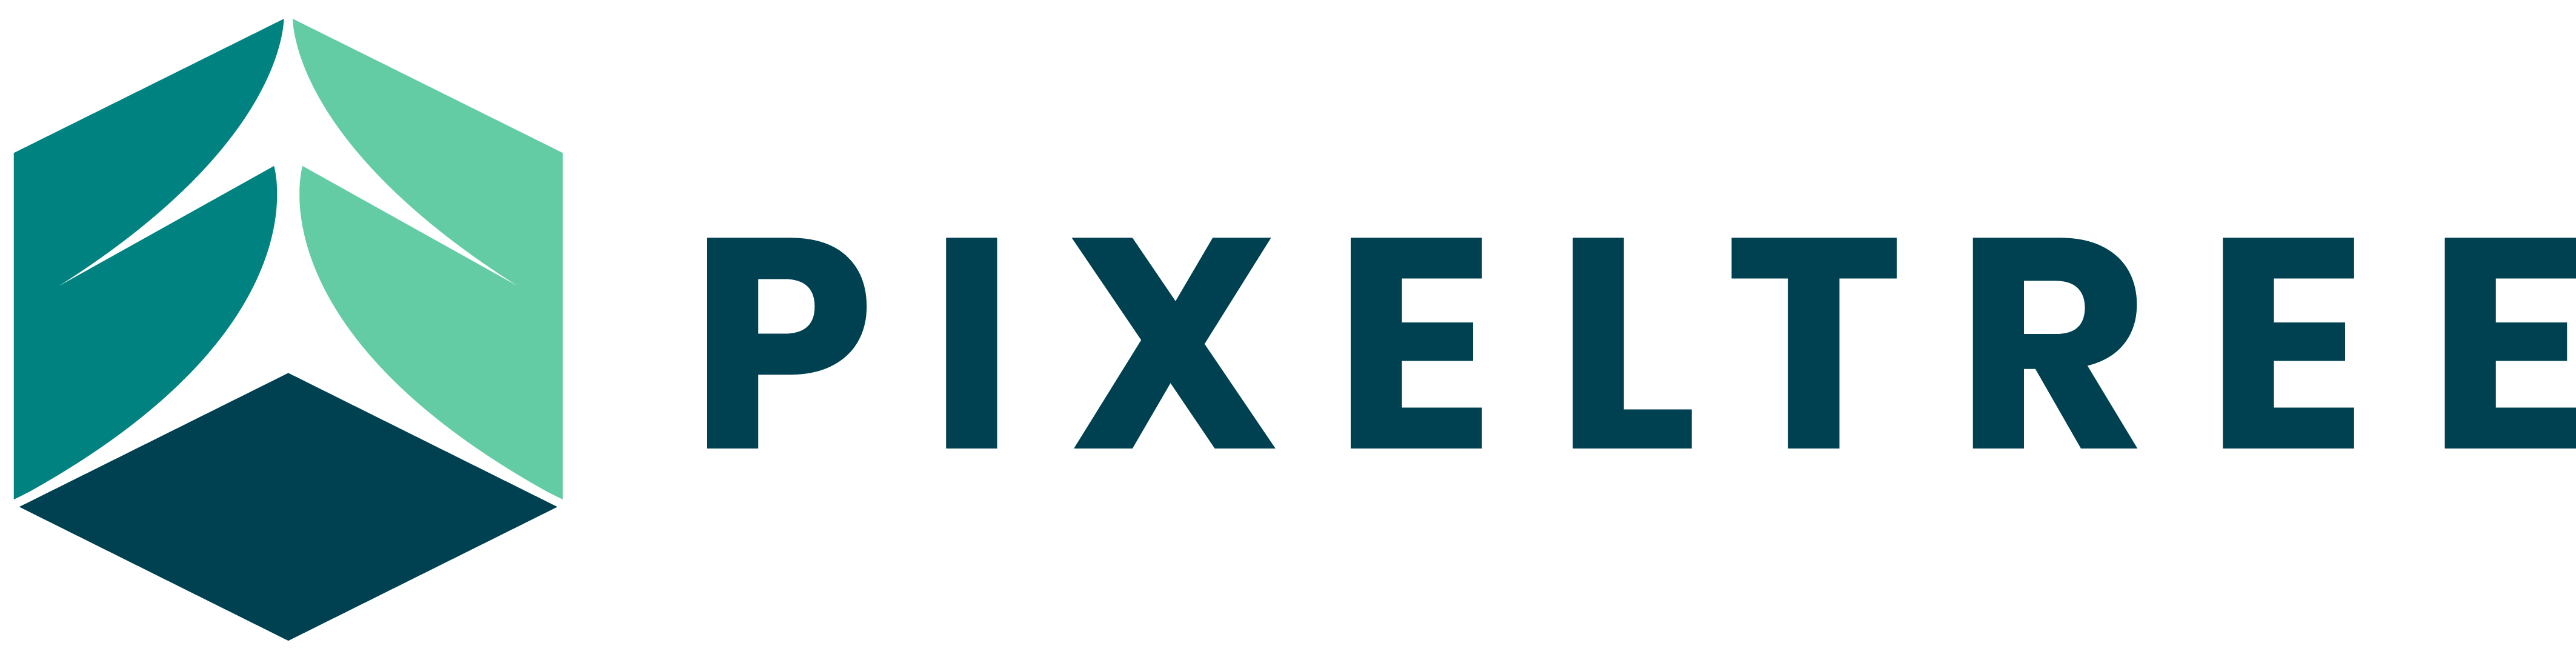 Pixeltree Inc.